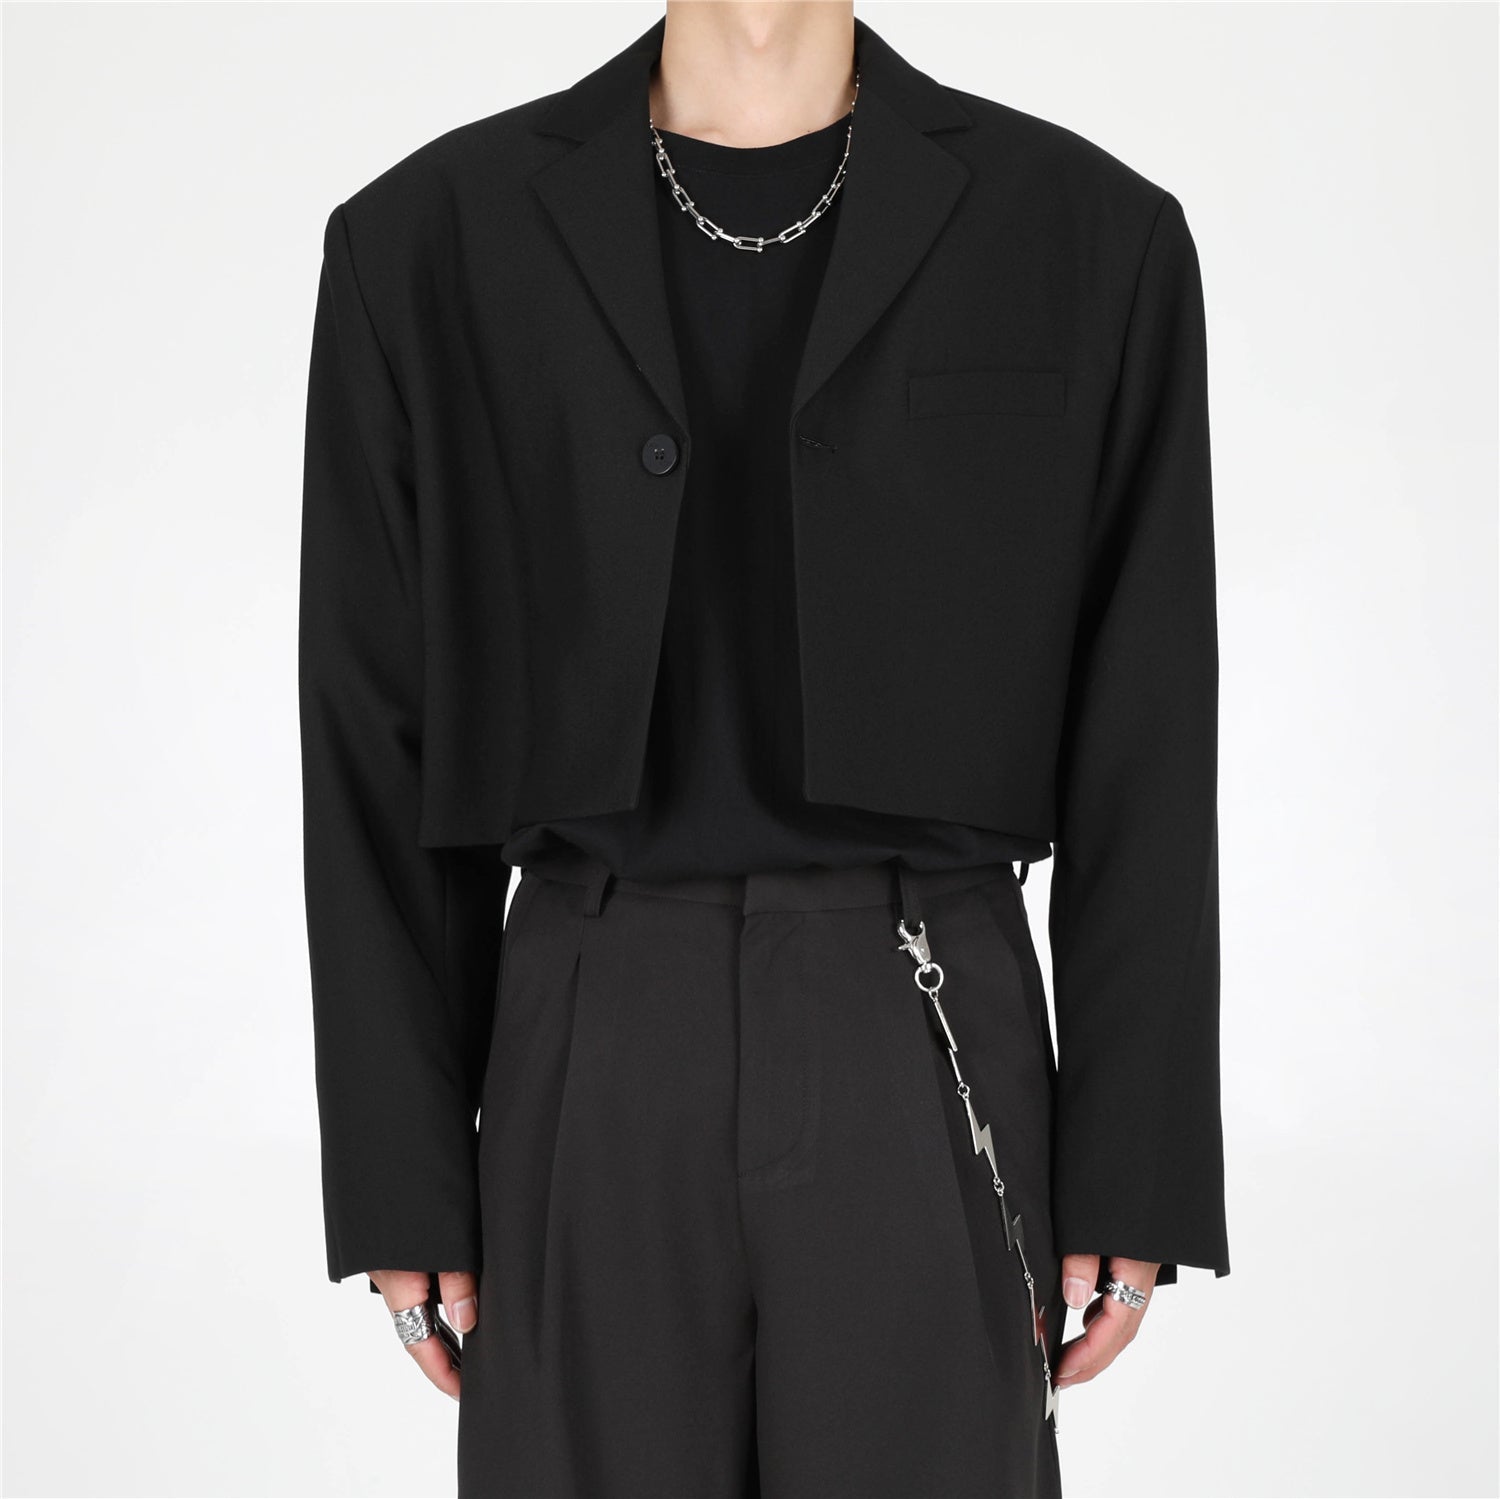 ブラックショートジャケット gm3046| 韓国メンズ総合ファッション通販 ブラック / XL